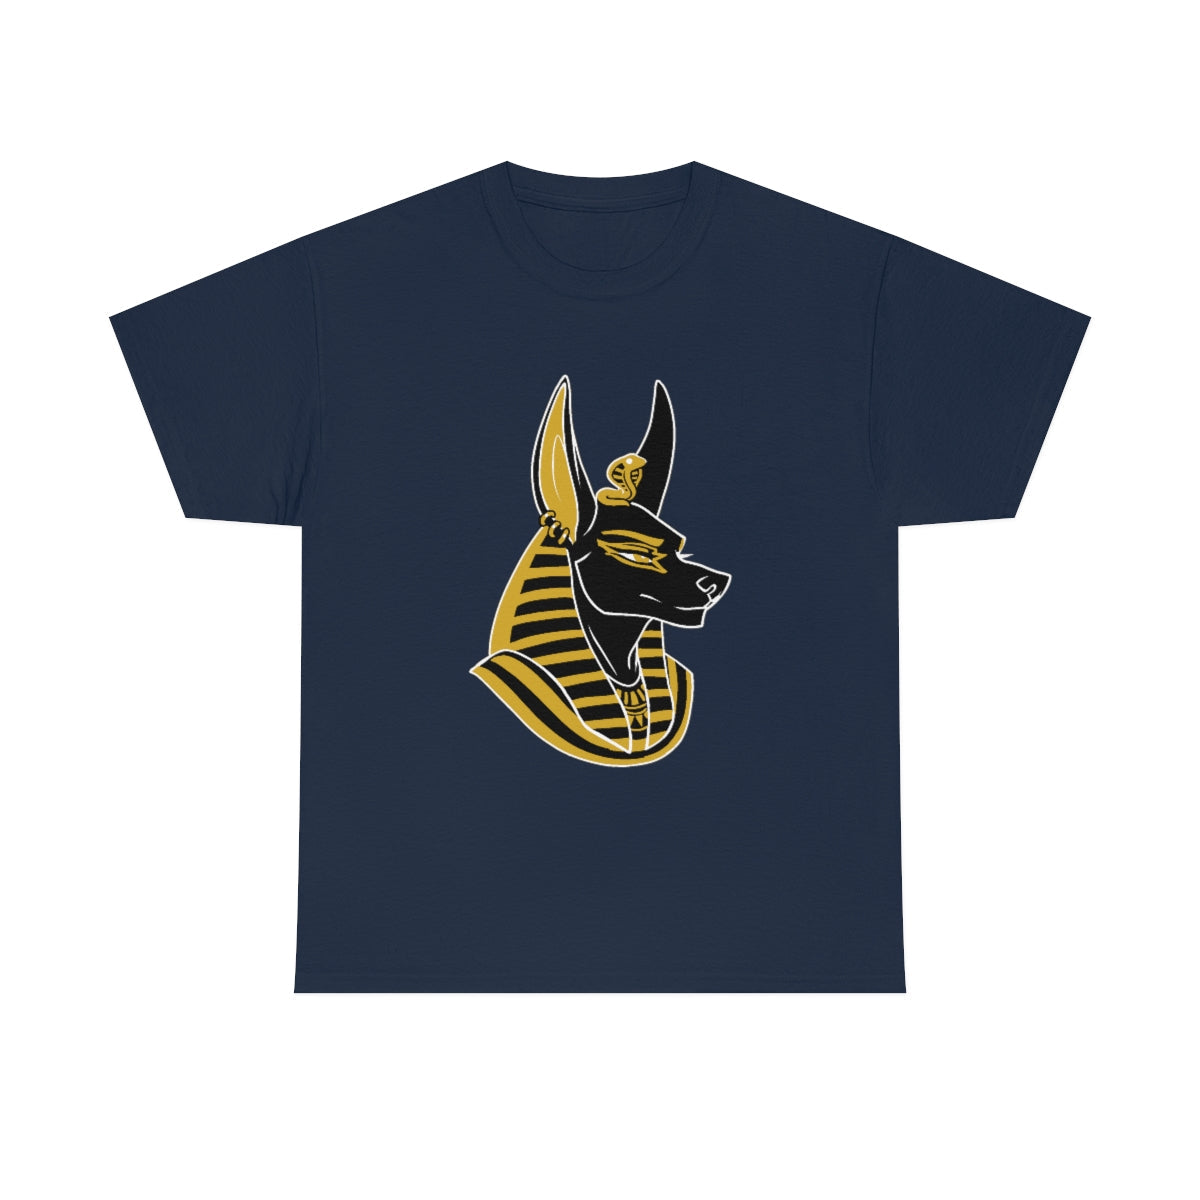 Anubis - T-Shirt T-Shirt Artworktee Navy Blue S 